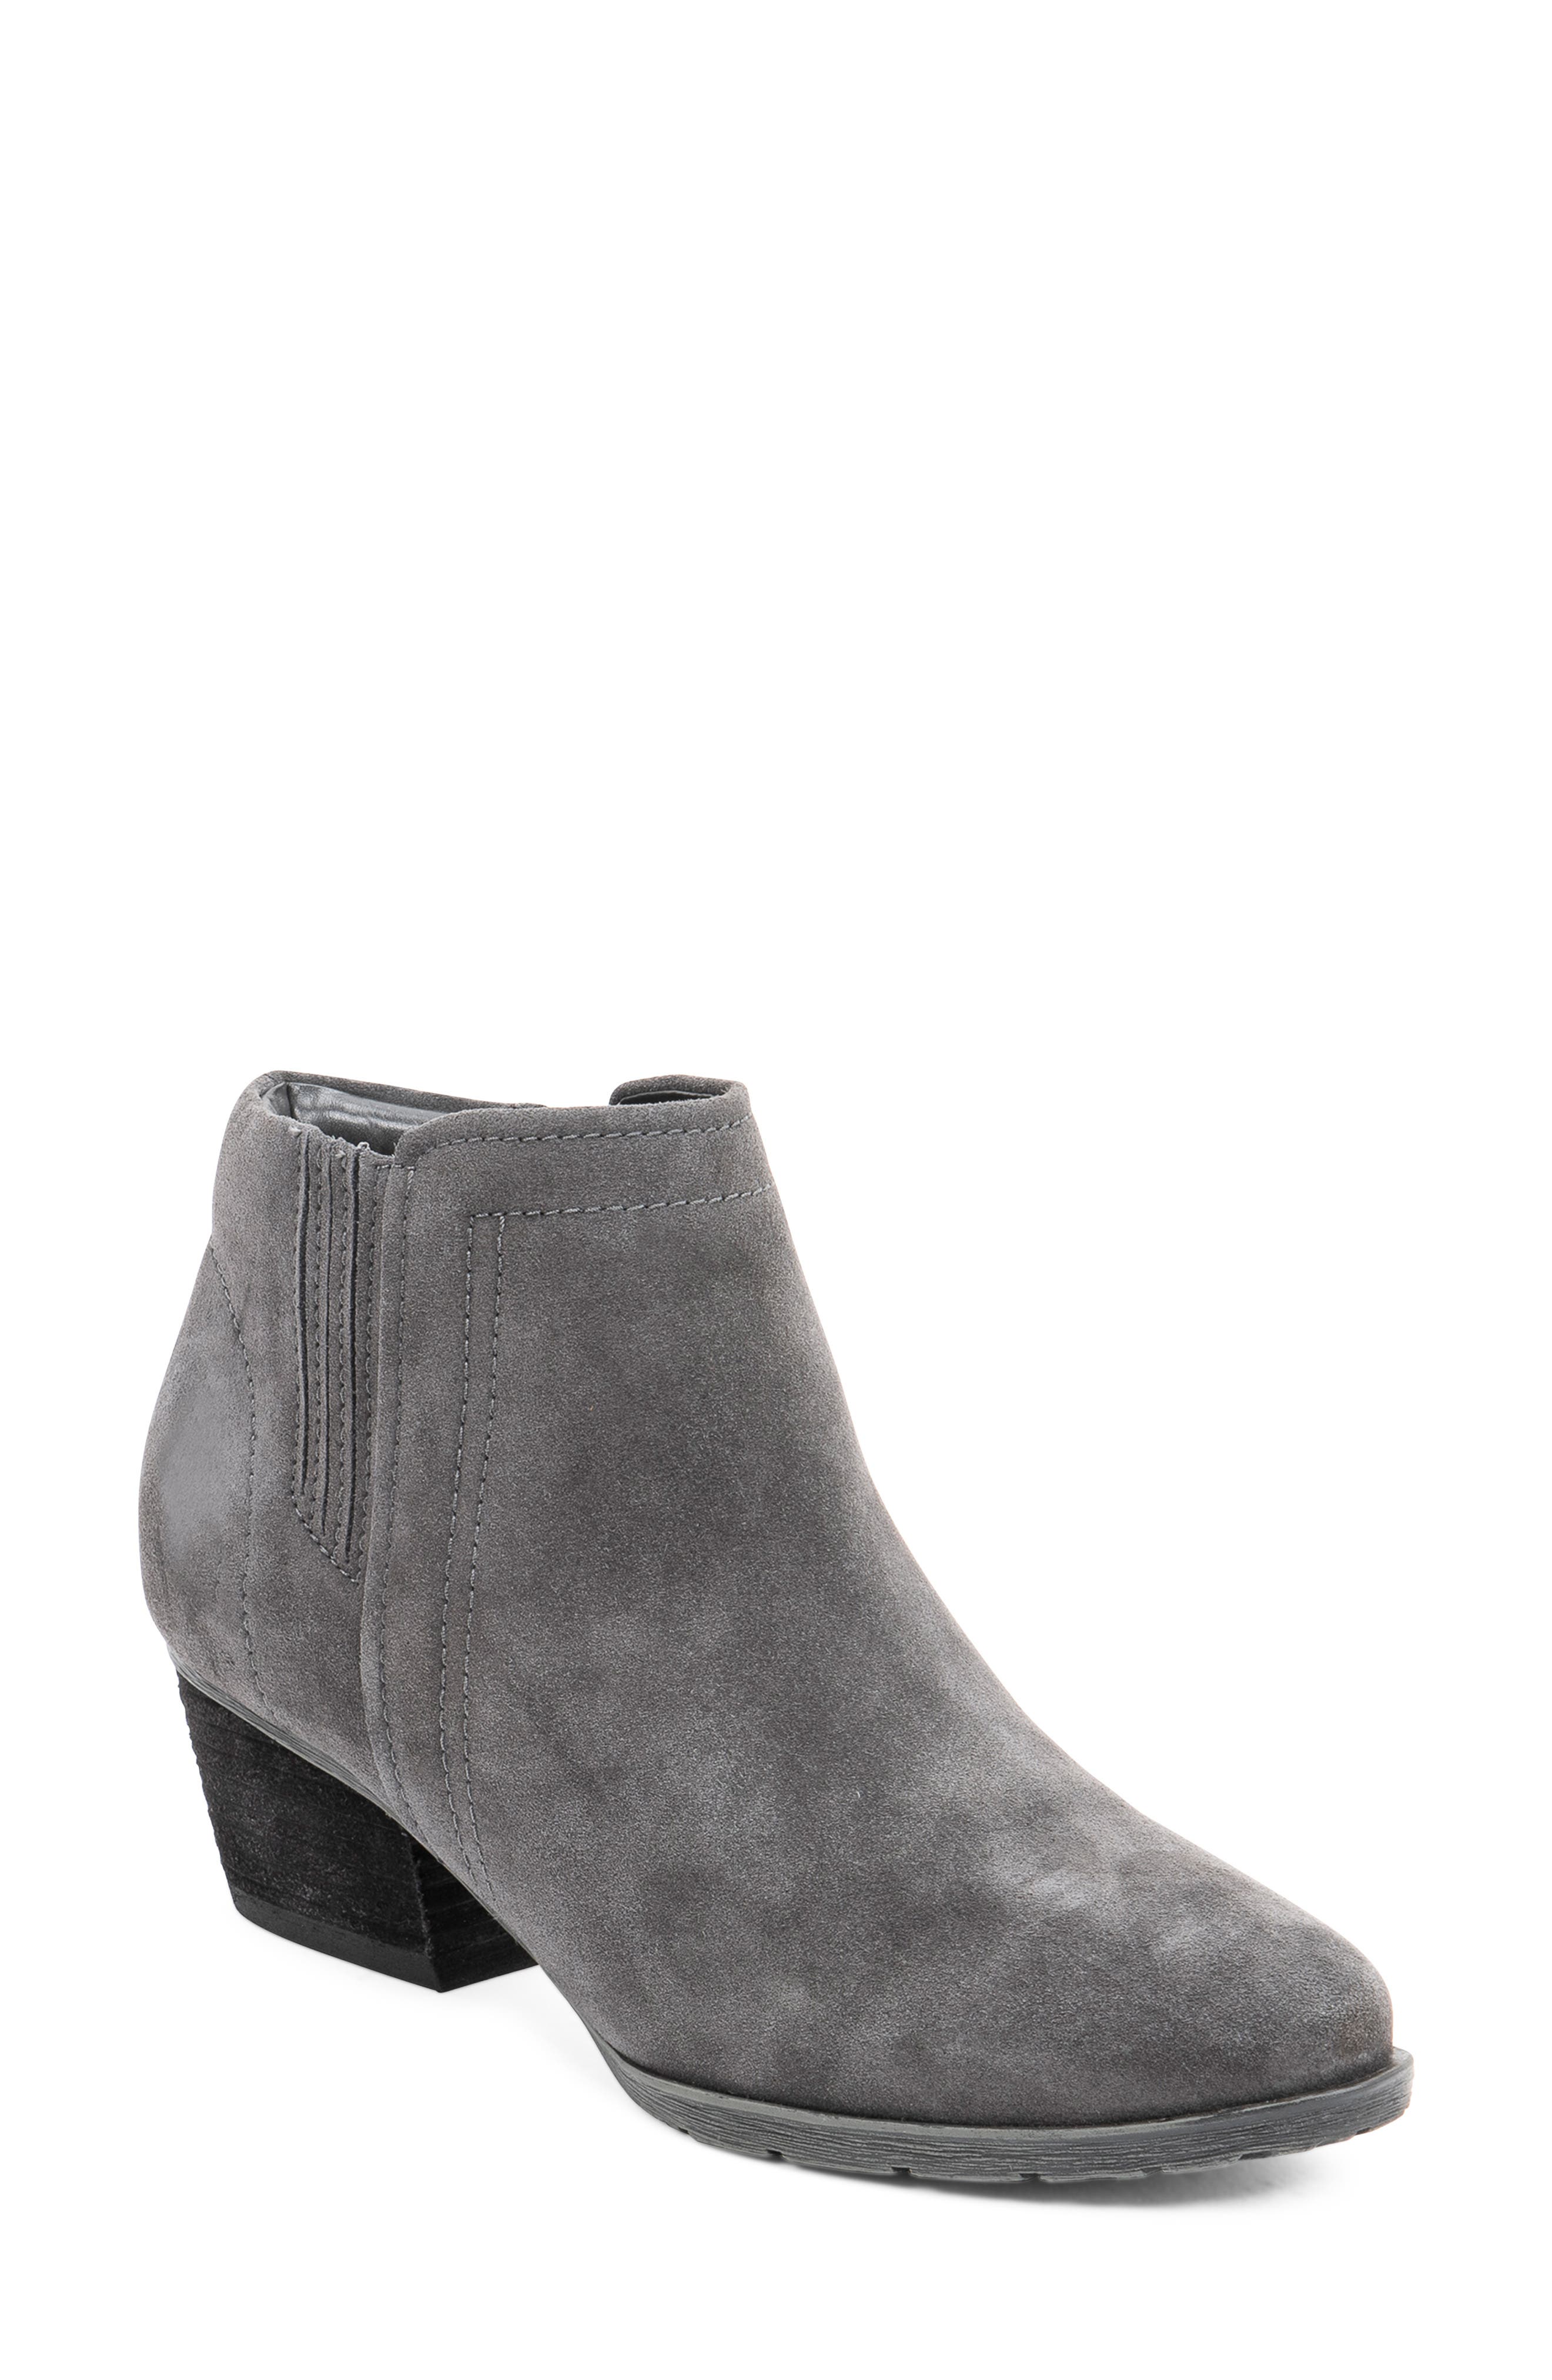 Women's Booties \u0026 Ankle Boots | Nordstrom